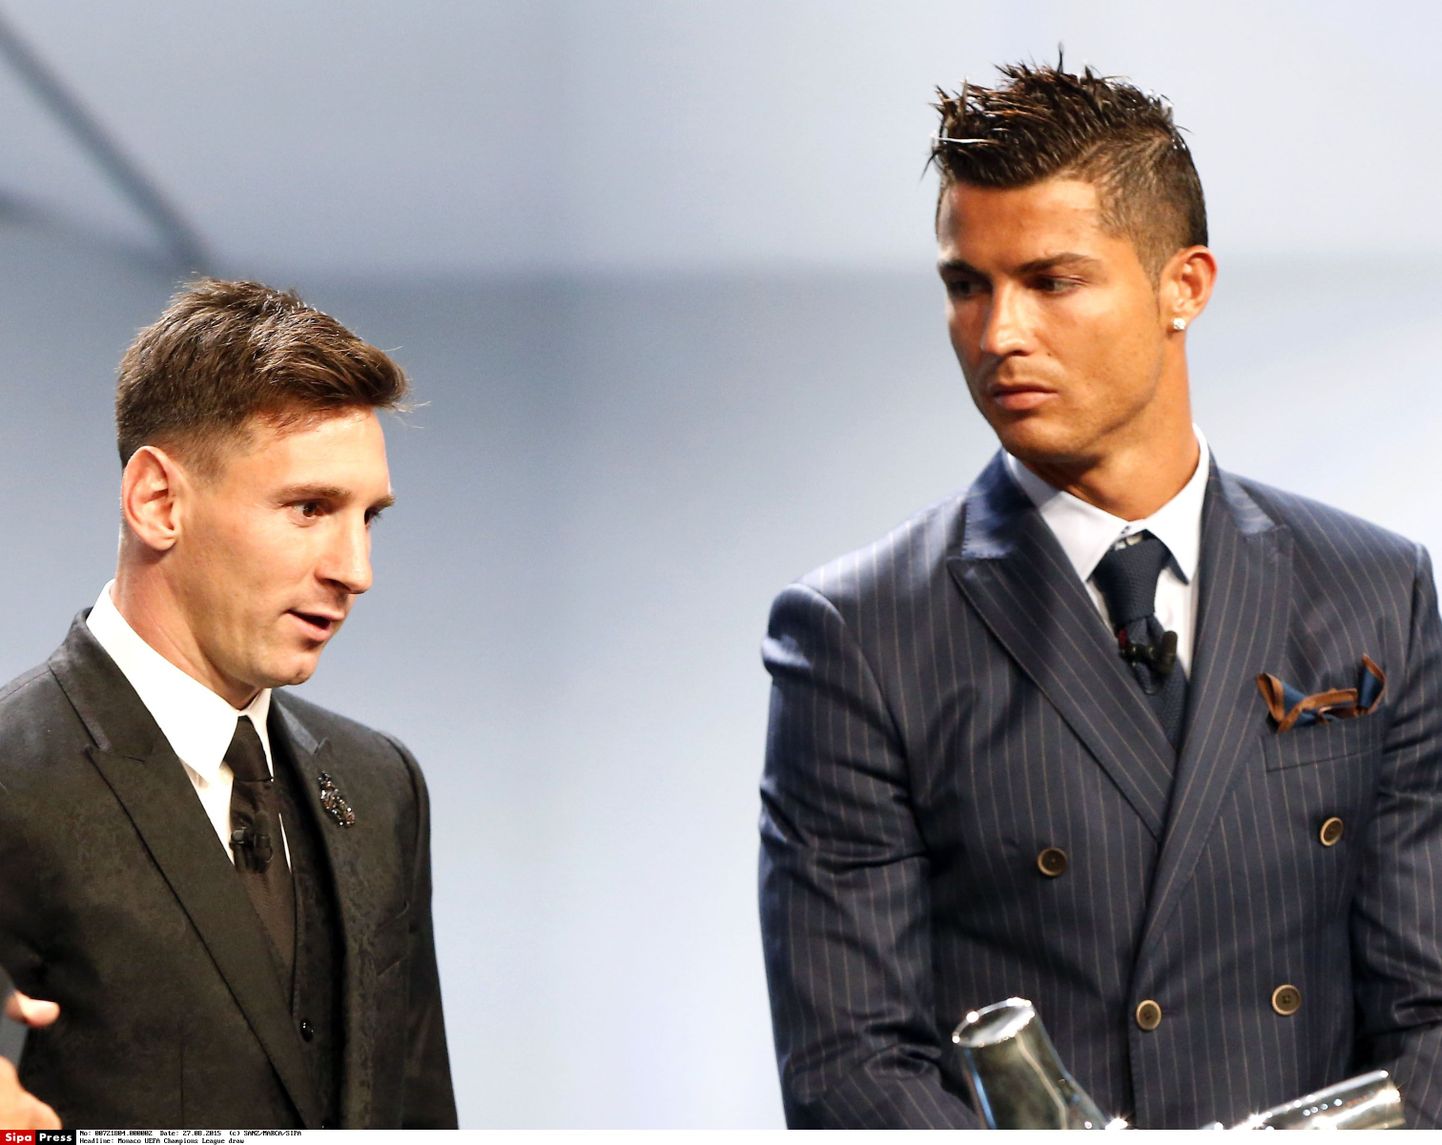 Lionel Messi ja Cristiano Ronaldo